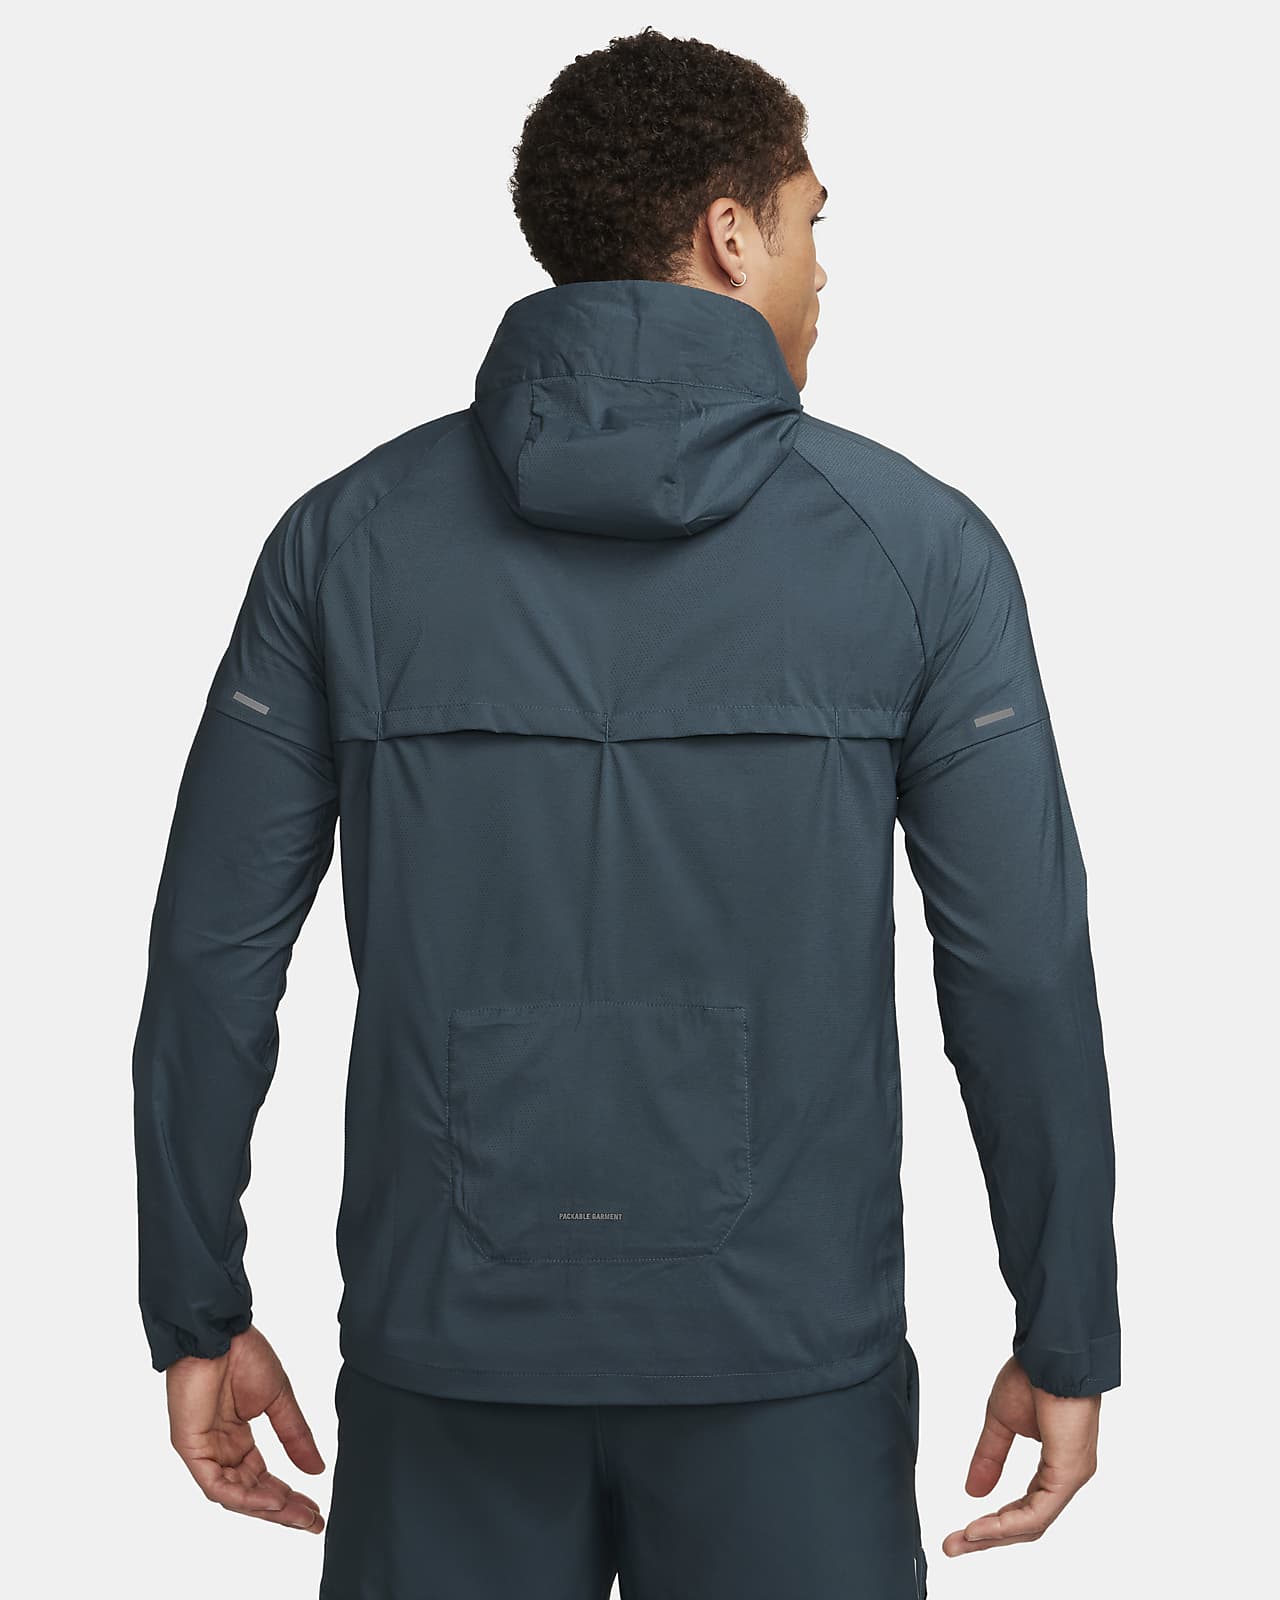 Windrunner UV Men\'s Protection Nike Repel Running Jacket.